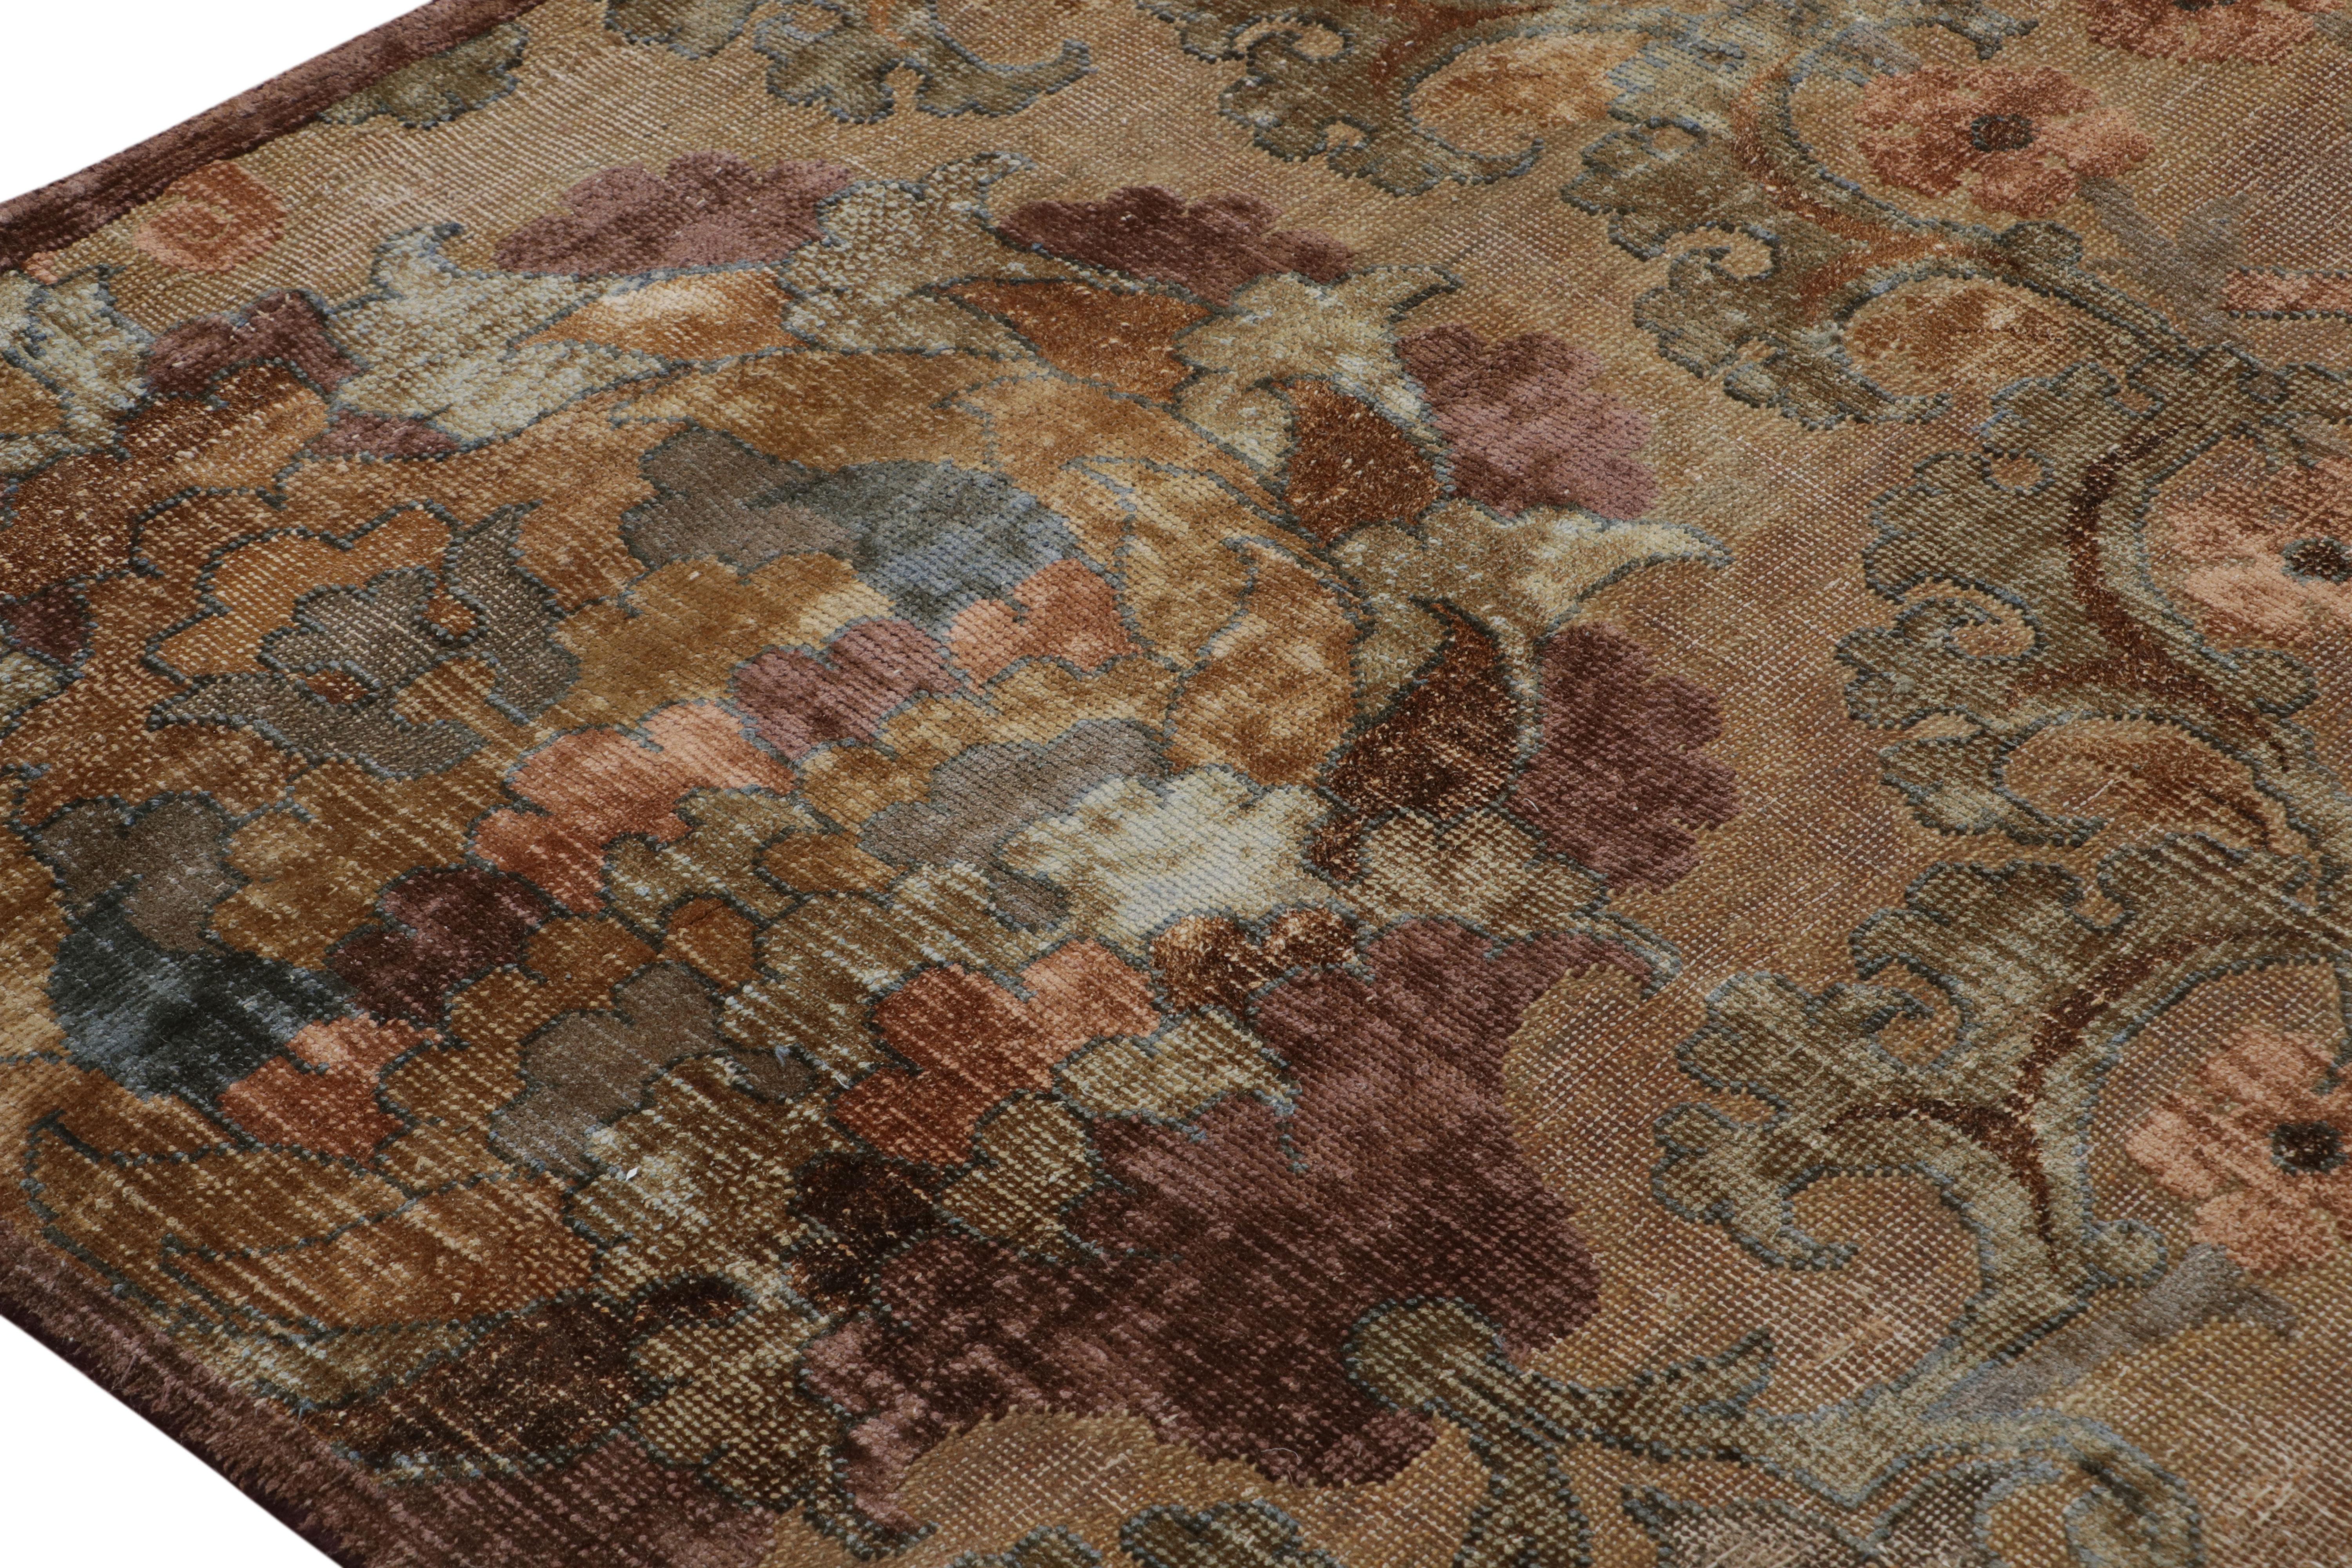 Indien Rug & Kilim's Antique Ottoman rug in Camel and Golden Brown Tones (tapis ottoman ancien dans les tons de chameau et de brun doré) en vente